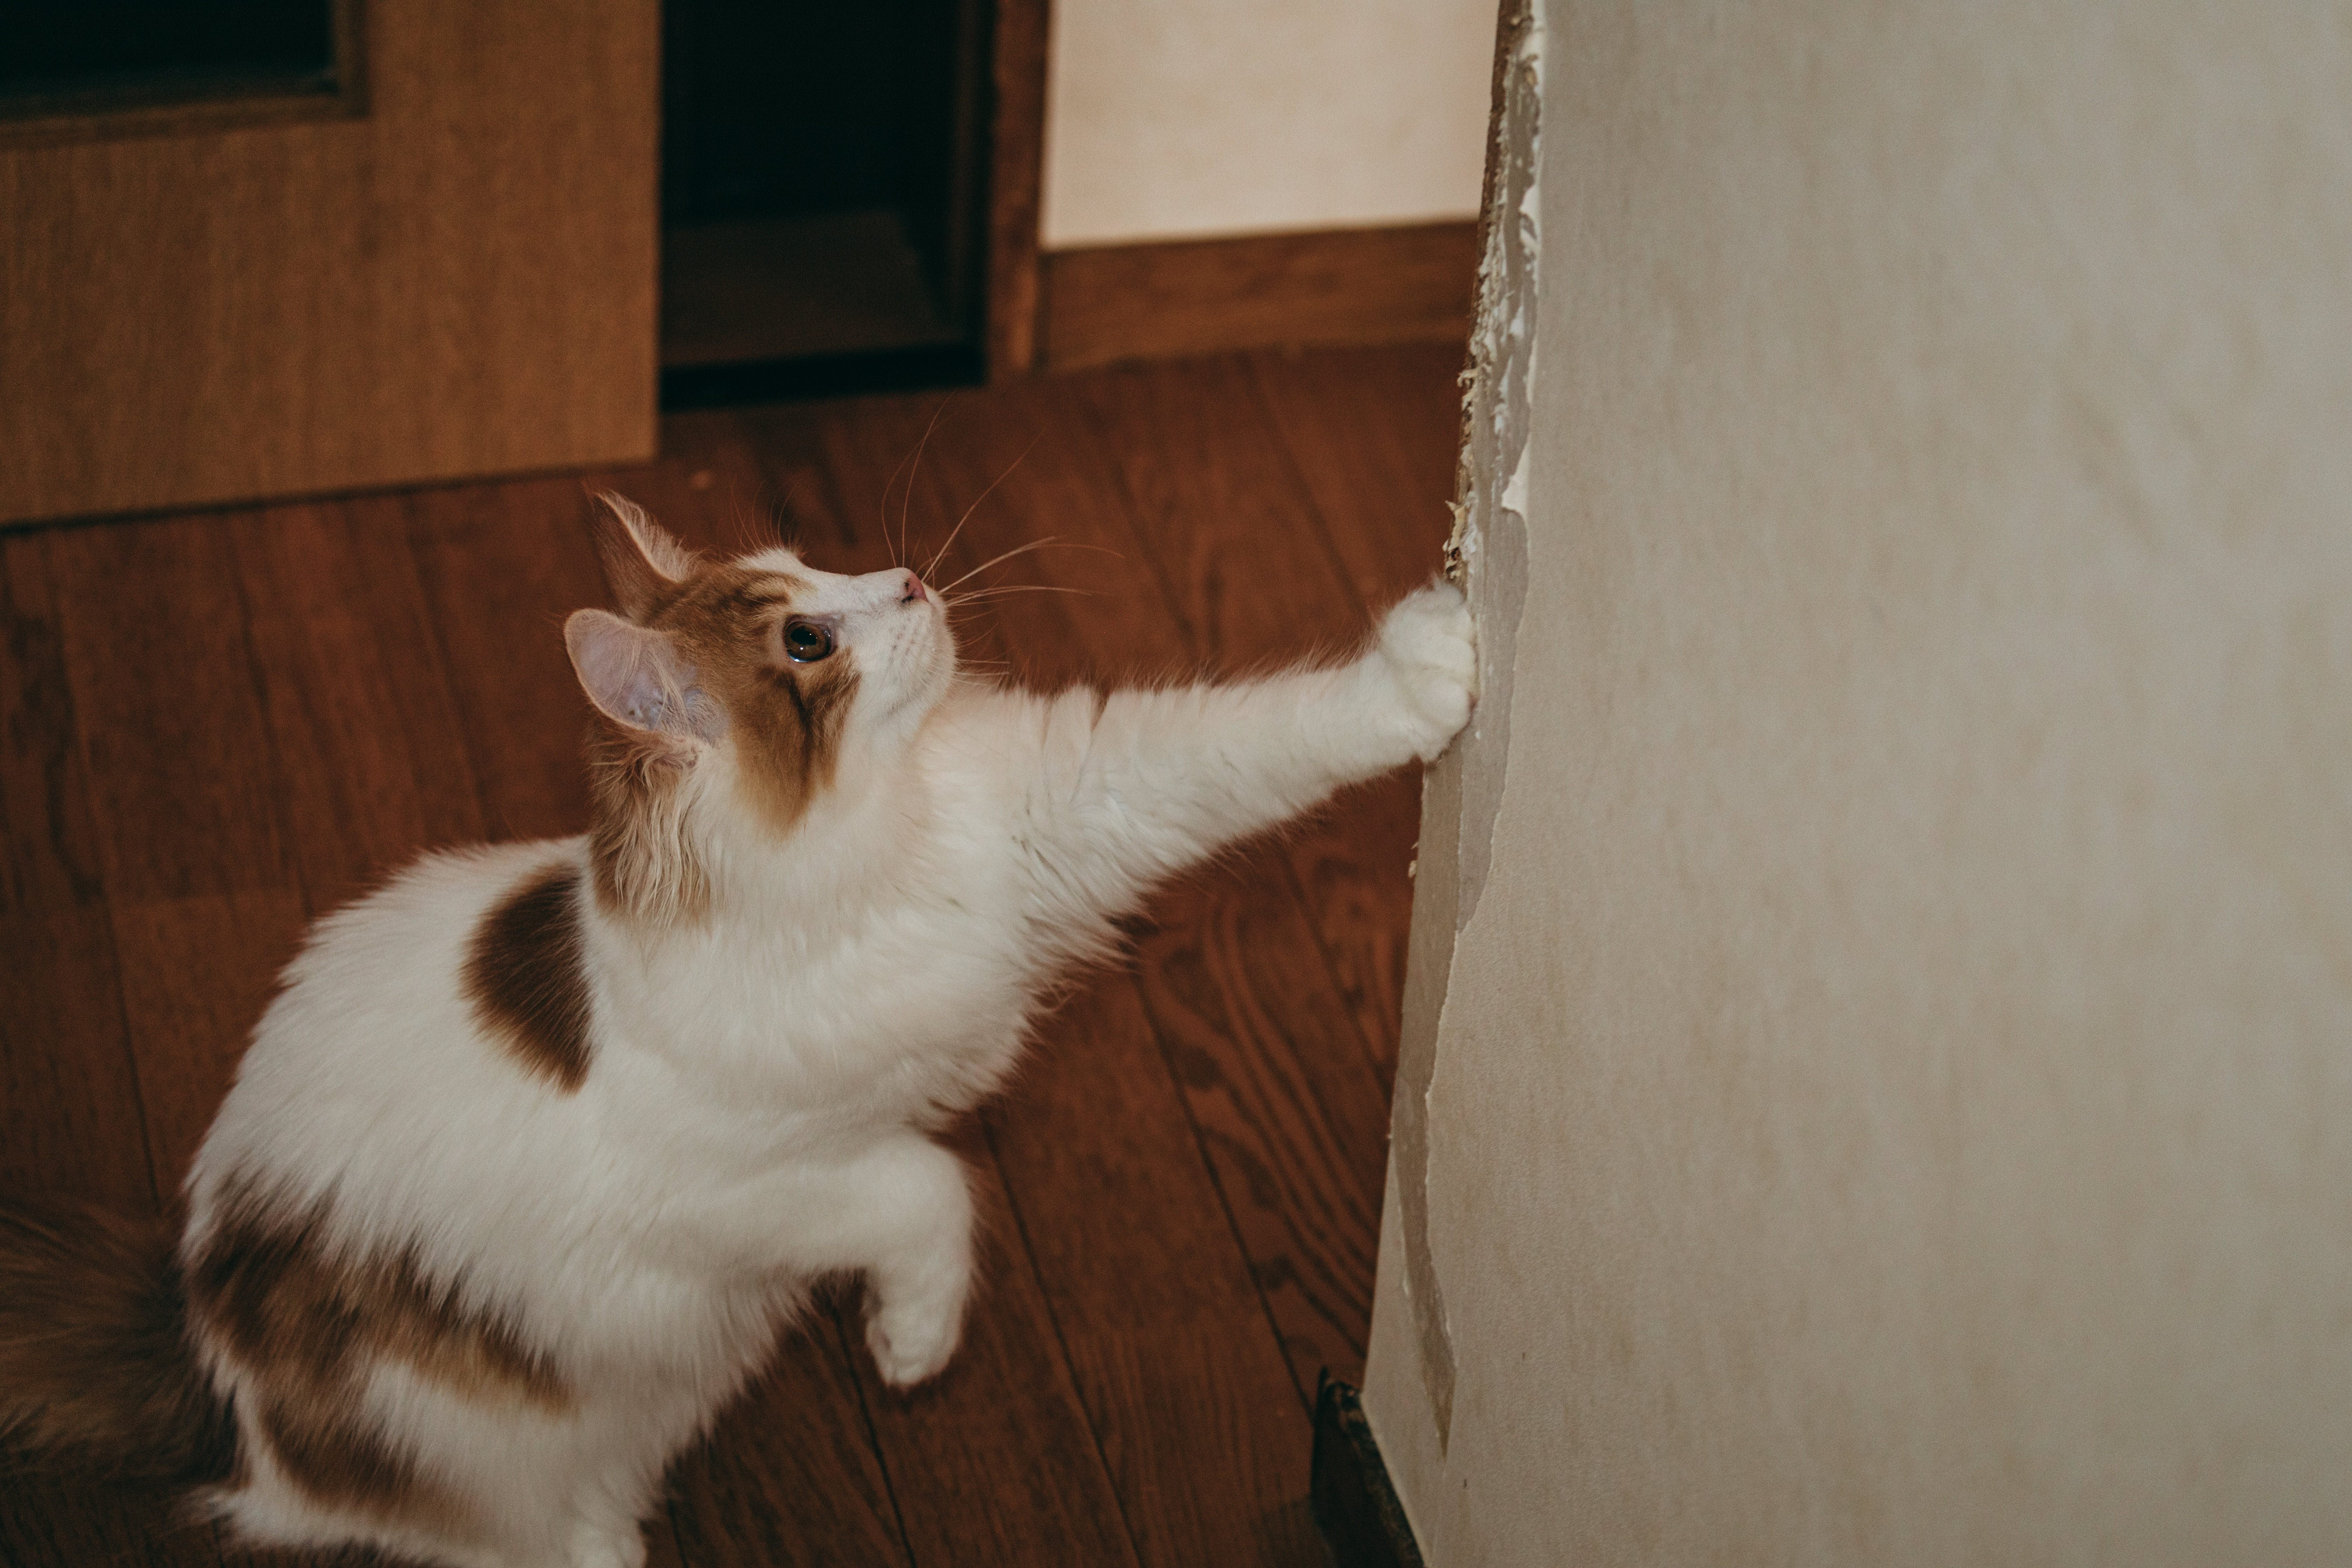 壁紙がボロボロになるまで爪とぎする猫の無料写真素材 - ID.74853